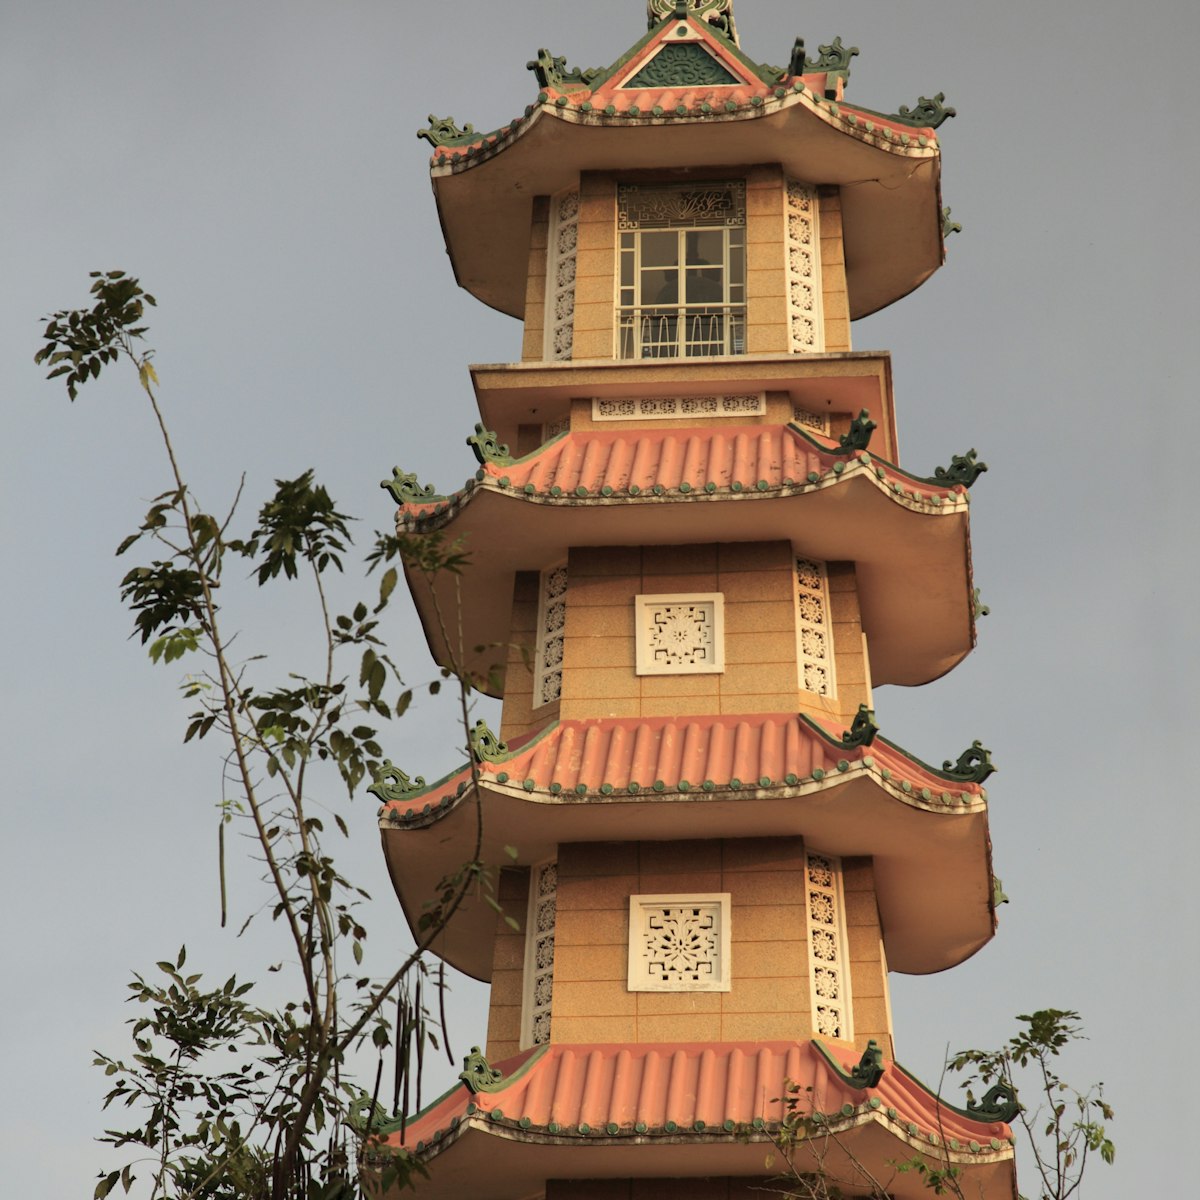 Vietnam, Ho Chi Minh City, Saigon, Xa Loi Pagoda